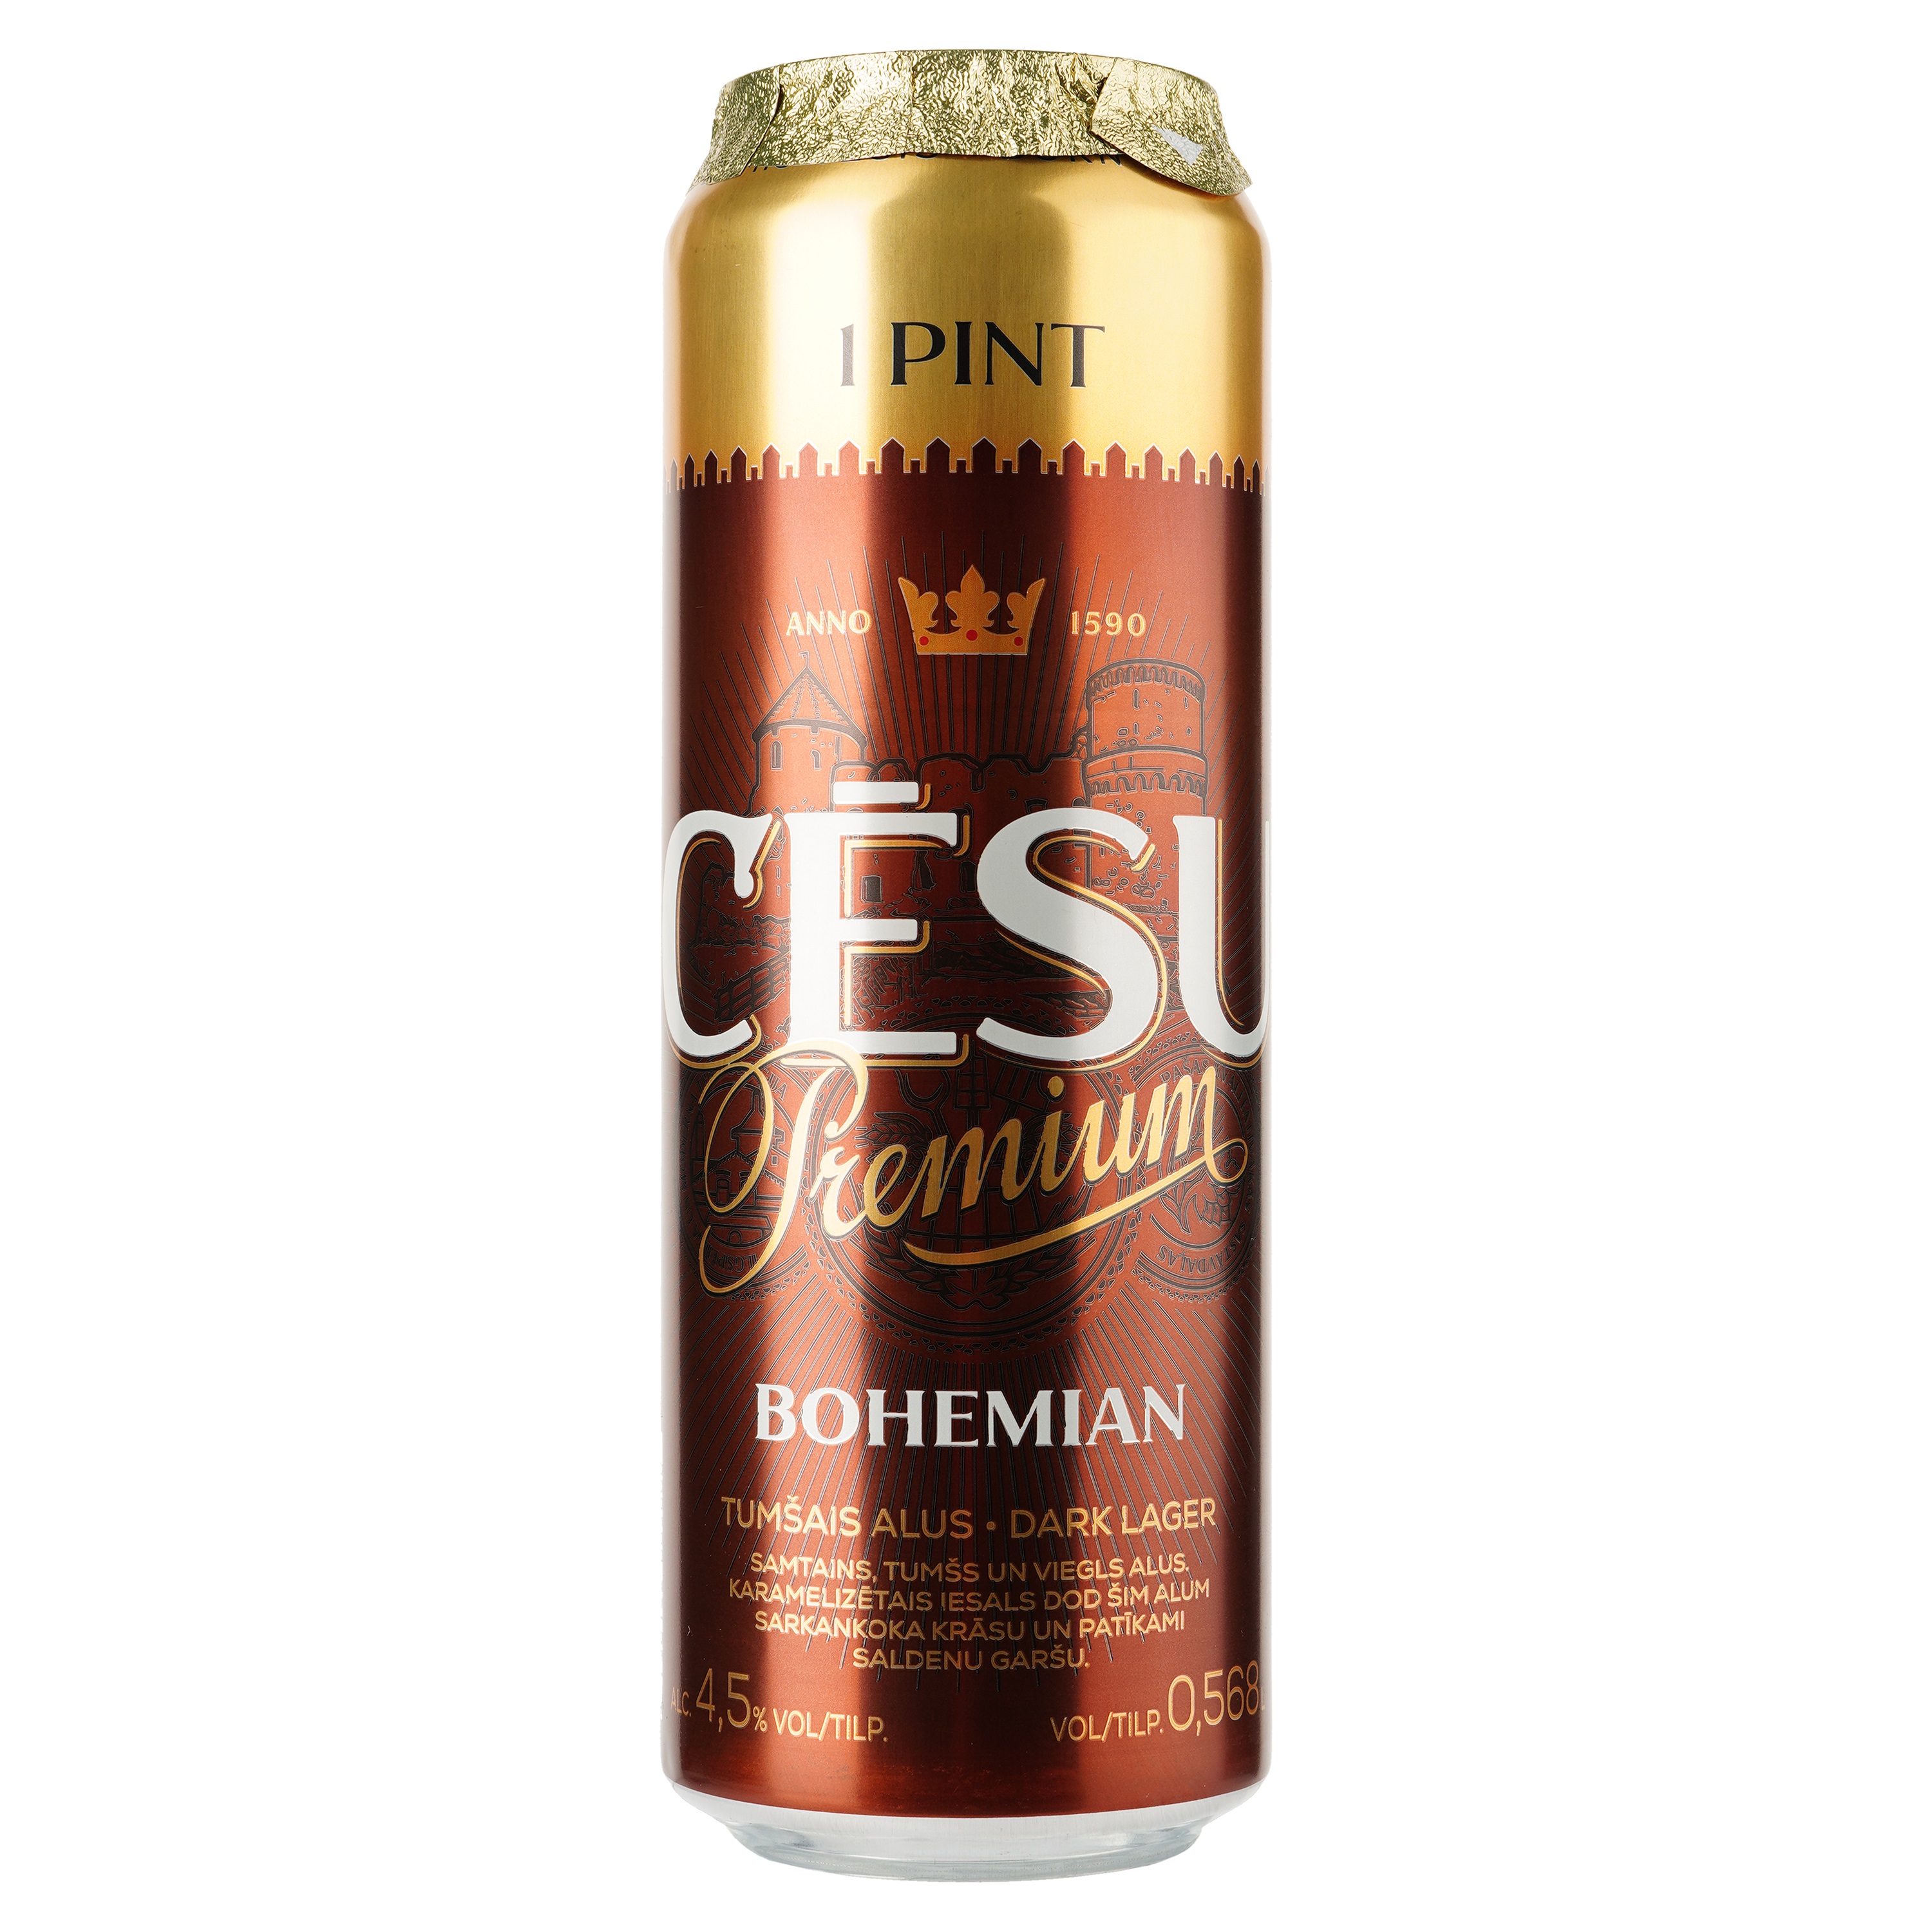 Пиво Cesu Premium Bohemian, темне, фільтроване, 4,5%, з/б, 0,568 л - фото 1